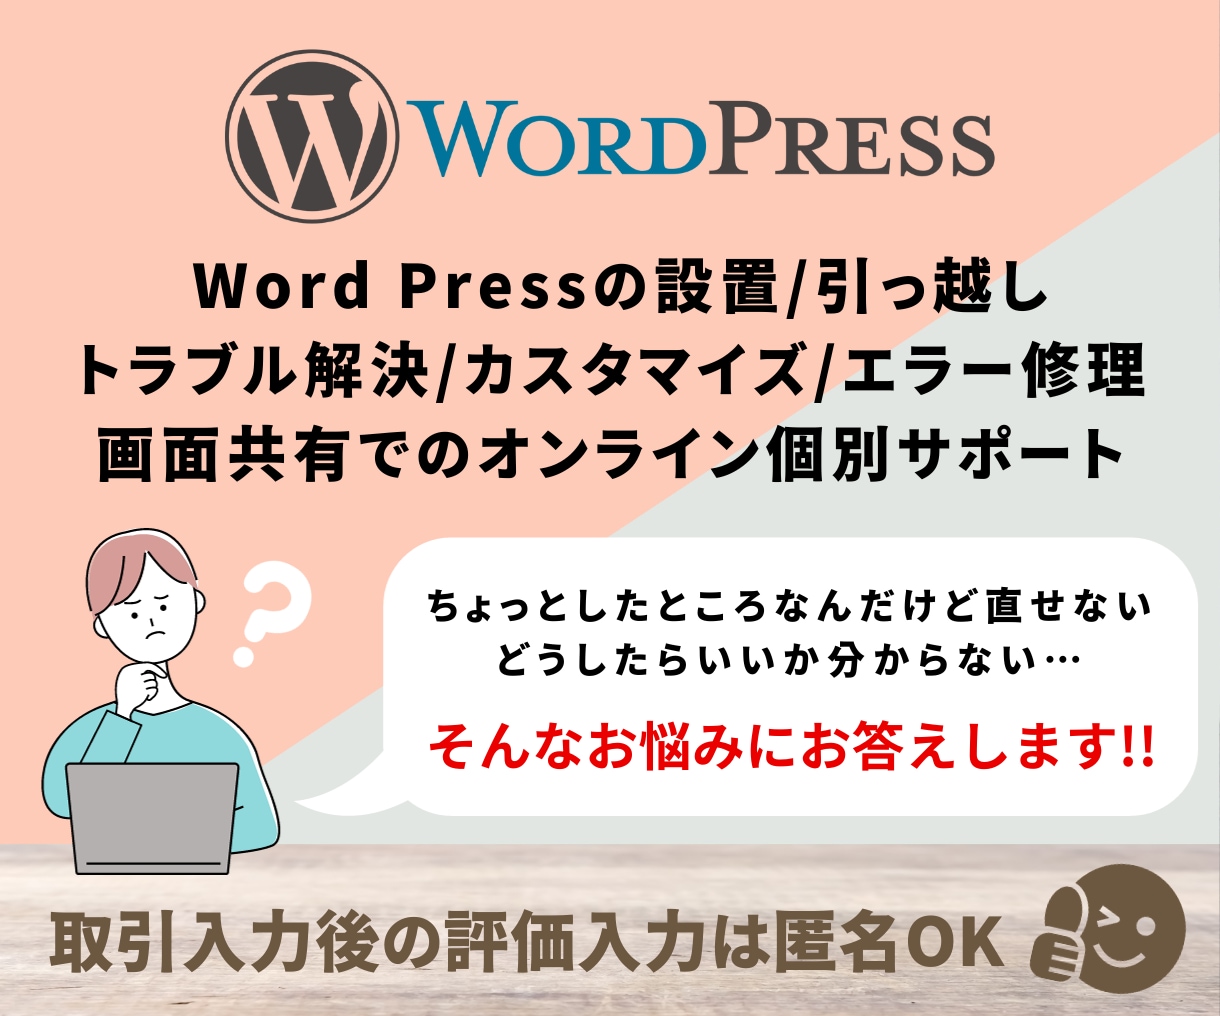 ワードプレス(Wordpress)のサポートします　Webサイト修正・カスタム・コンサル　ワードプレス(Wordpress)、トラブル、カスタマイズ　ココナラ